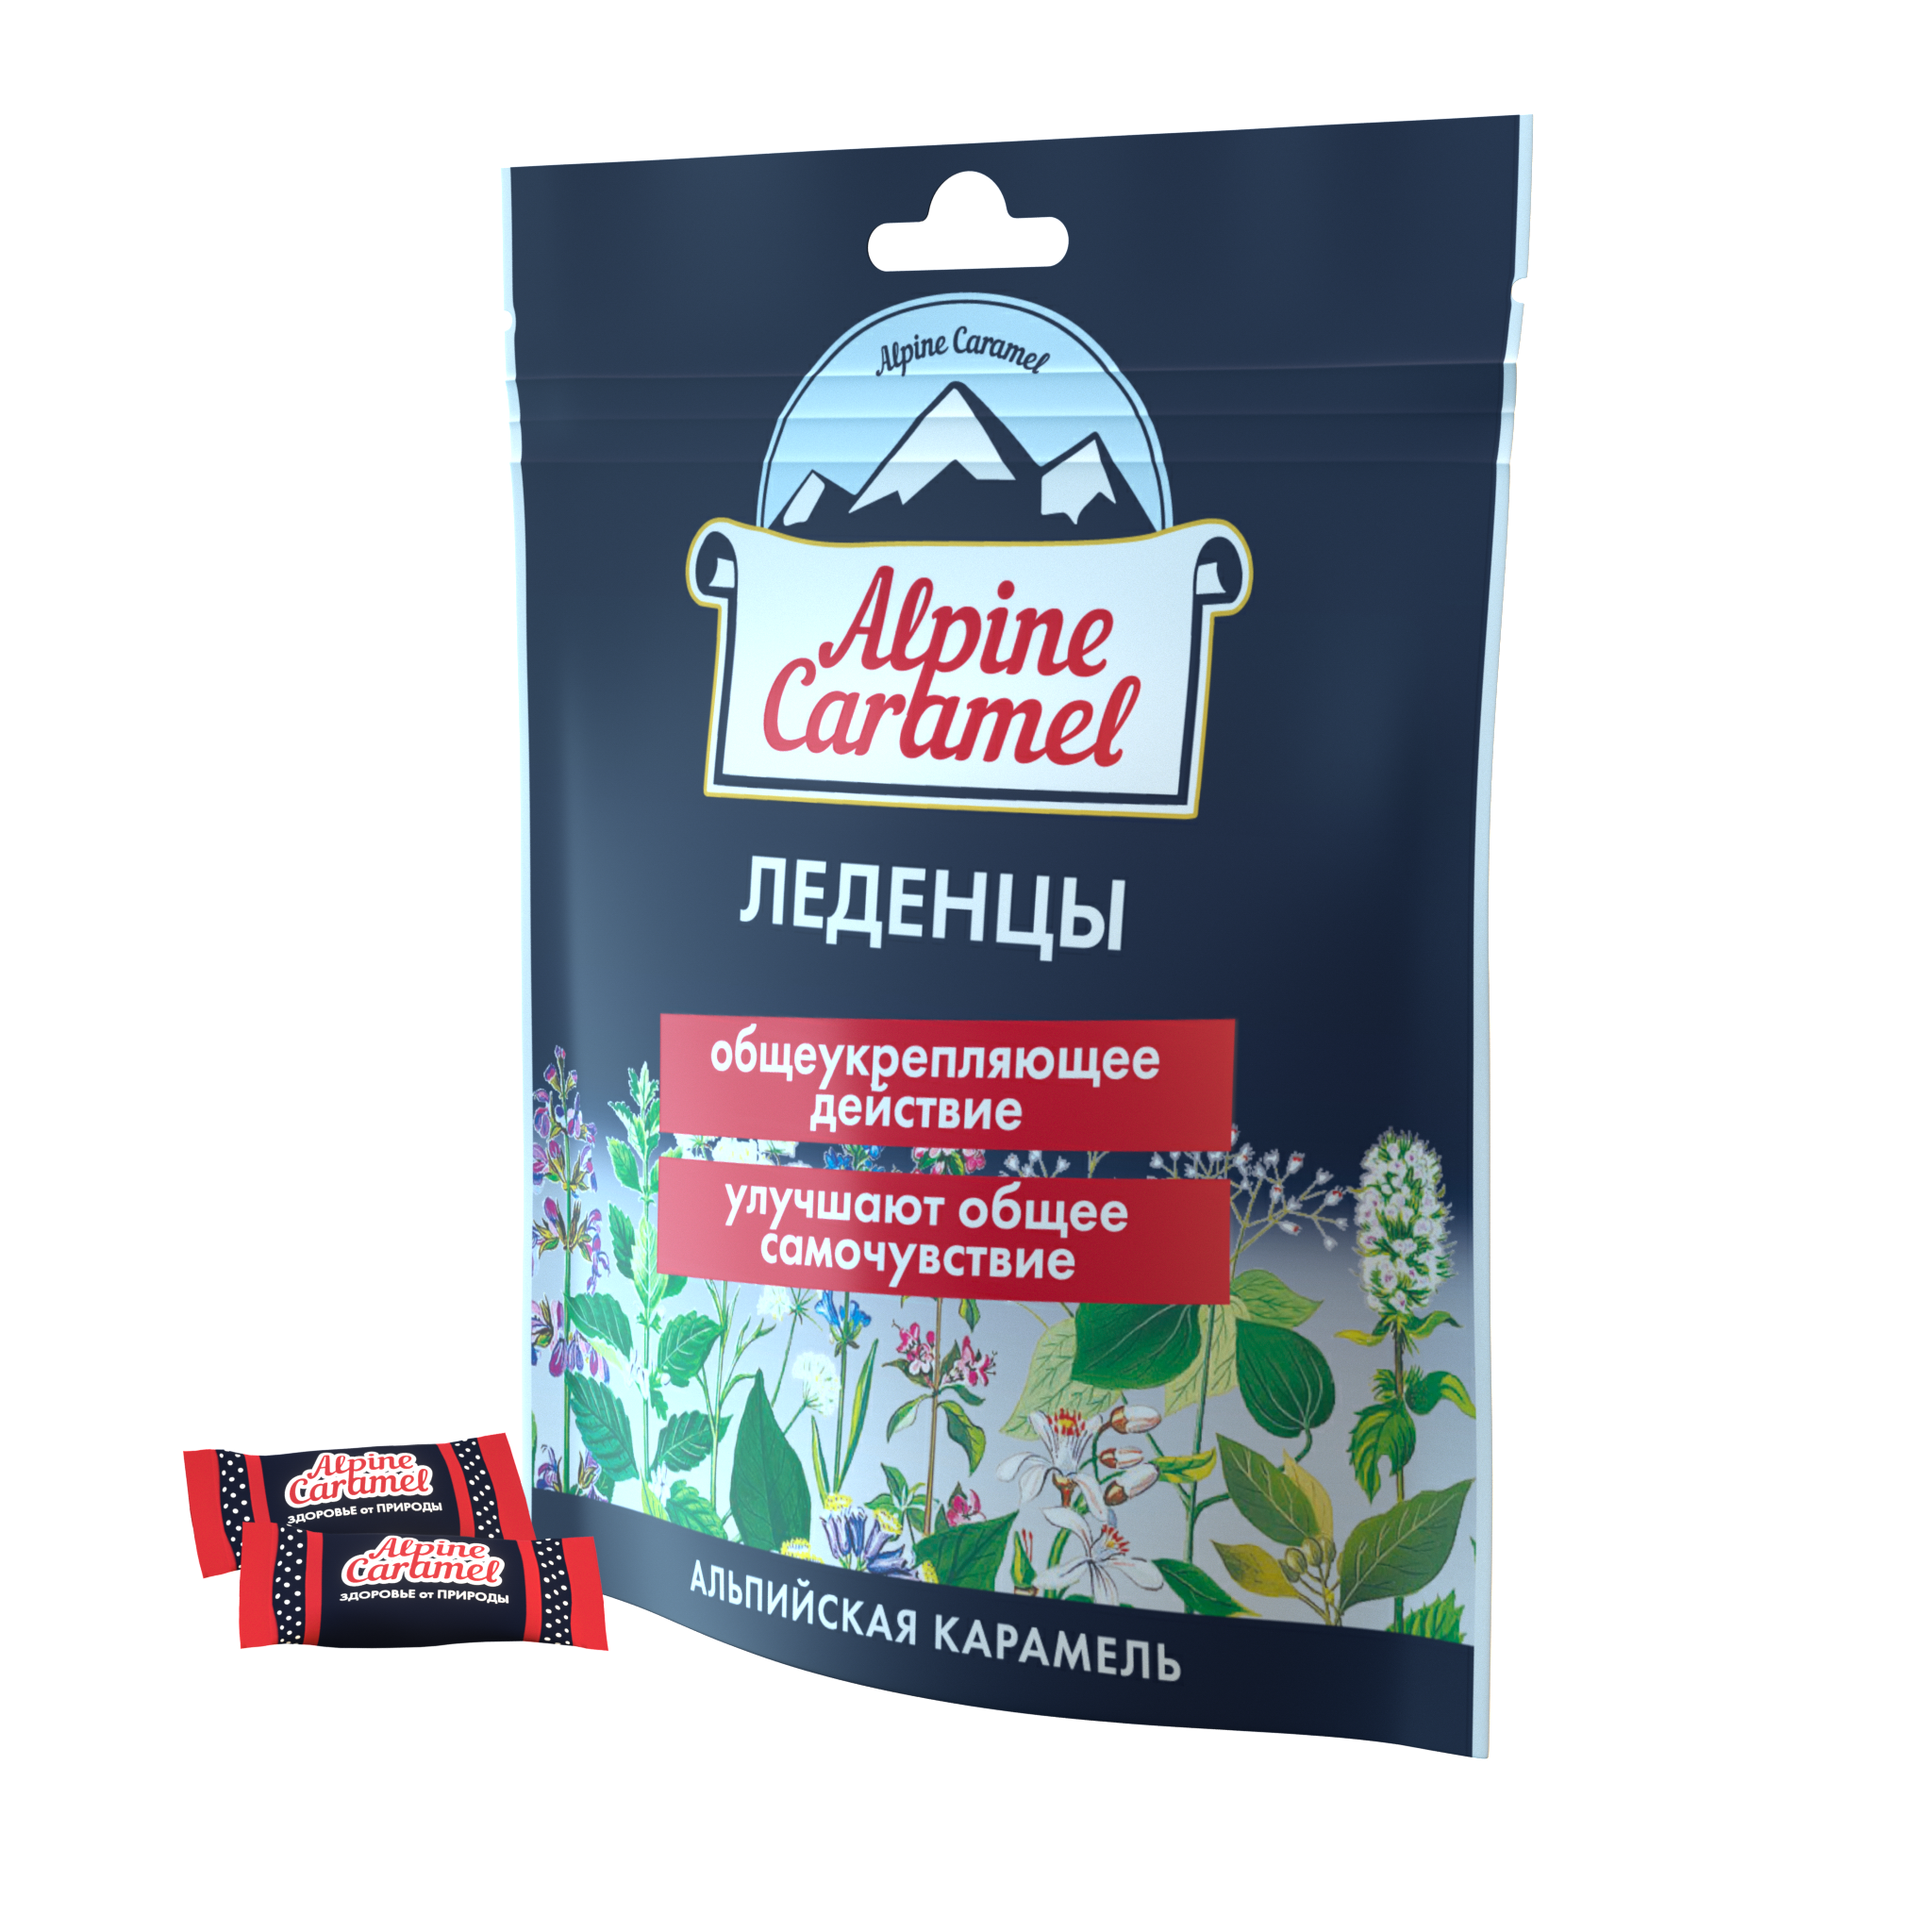 Alpine Caramel Альпийская Карамель леденцы, 75 г альпийская карамель леденцы 75г